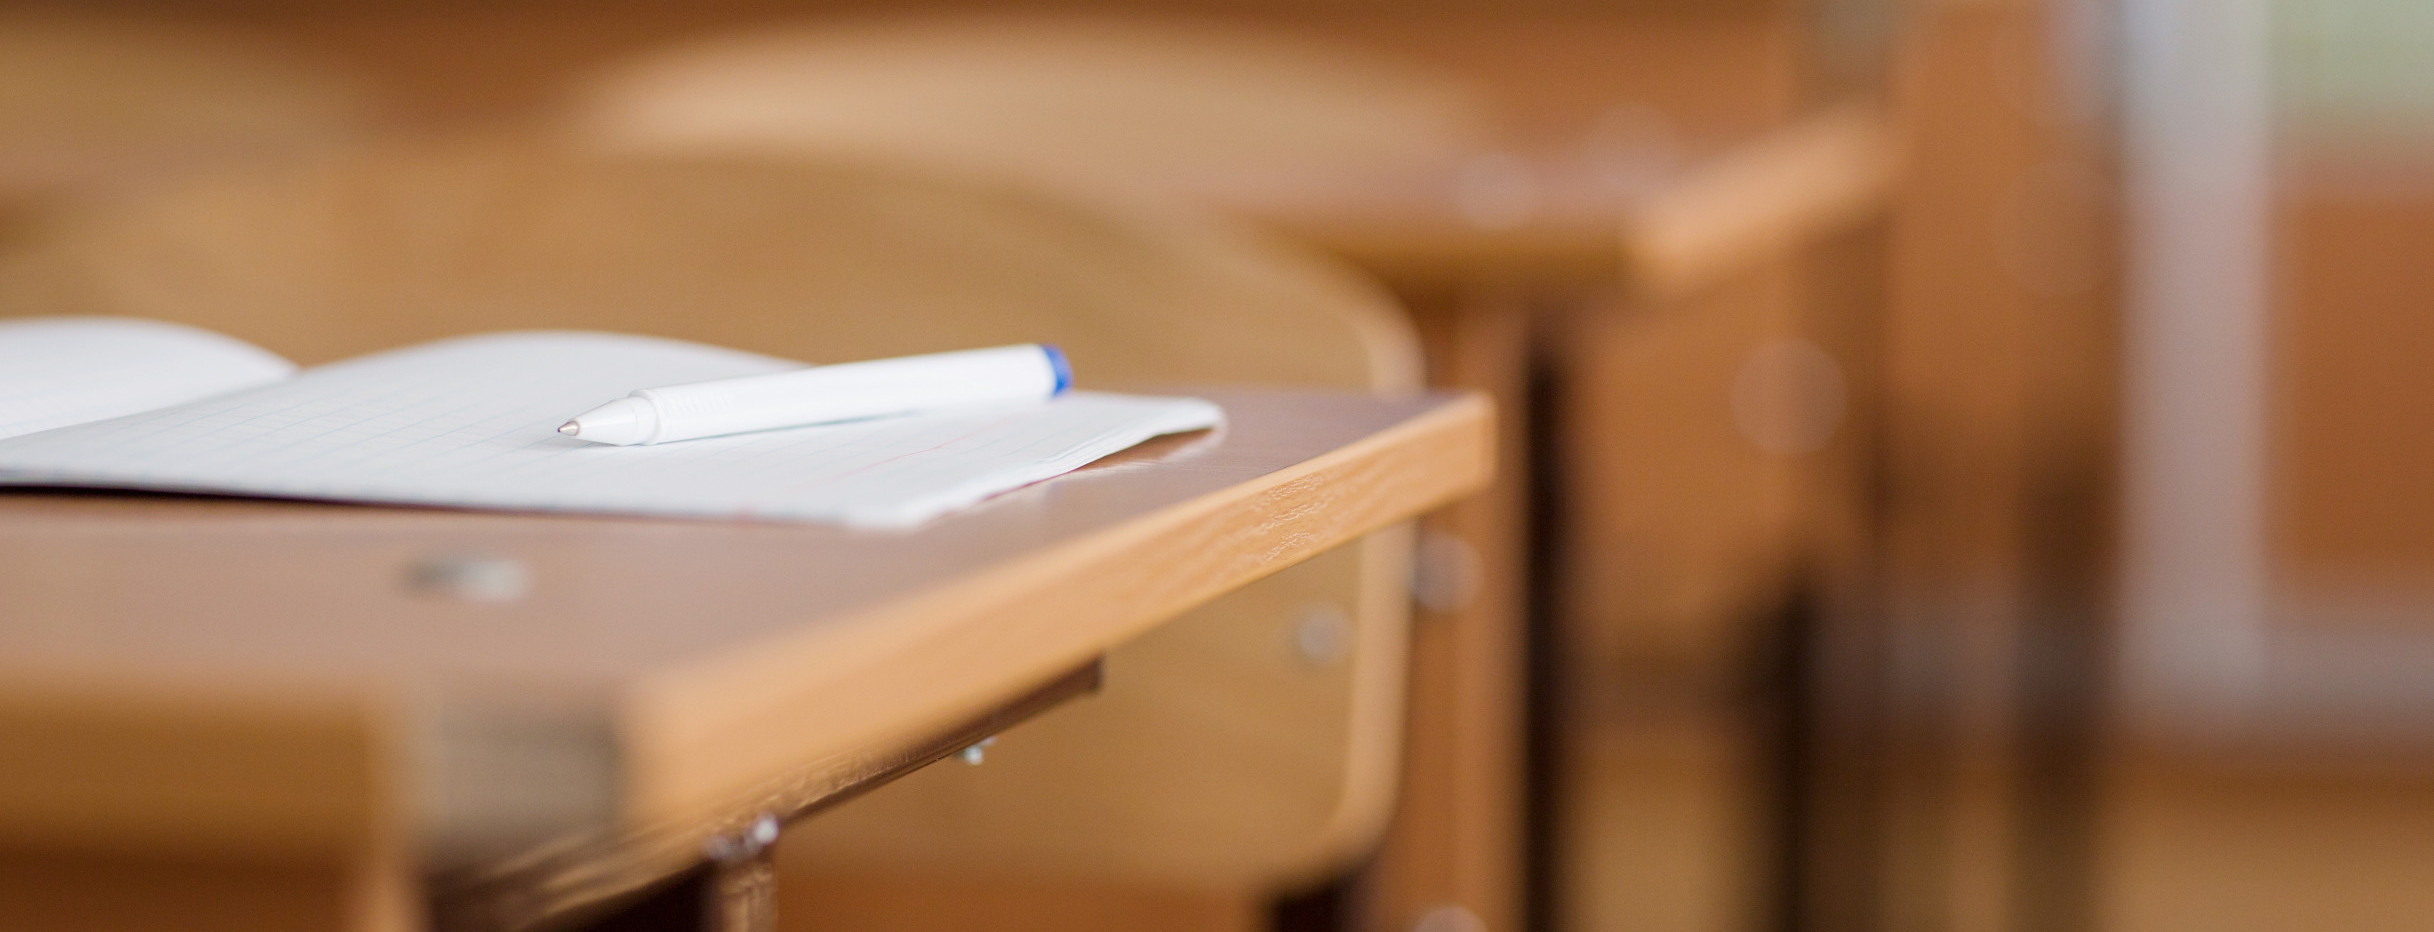 Schultisch, Notizbuch und Stift liegen auf dem Tisch. Der Rest der Schulklasse in Unschärfe